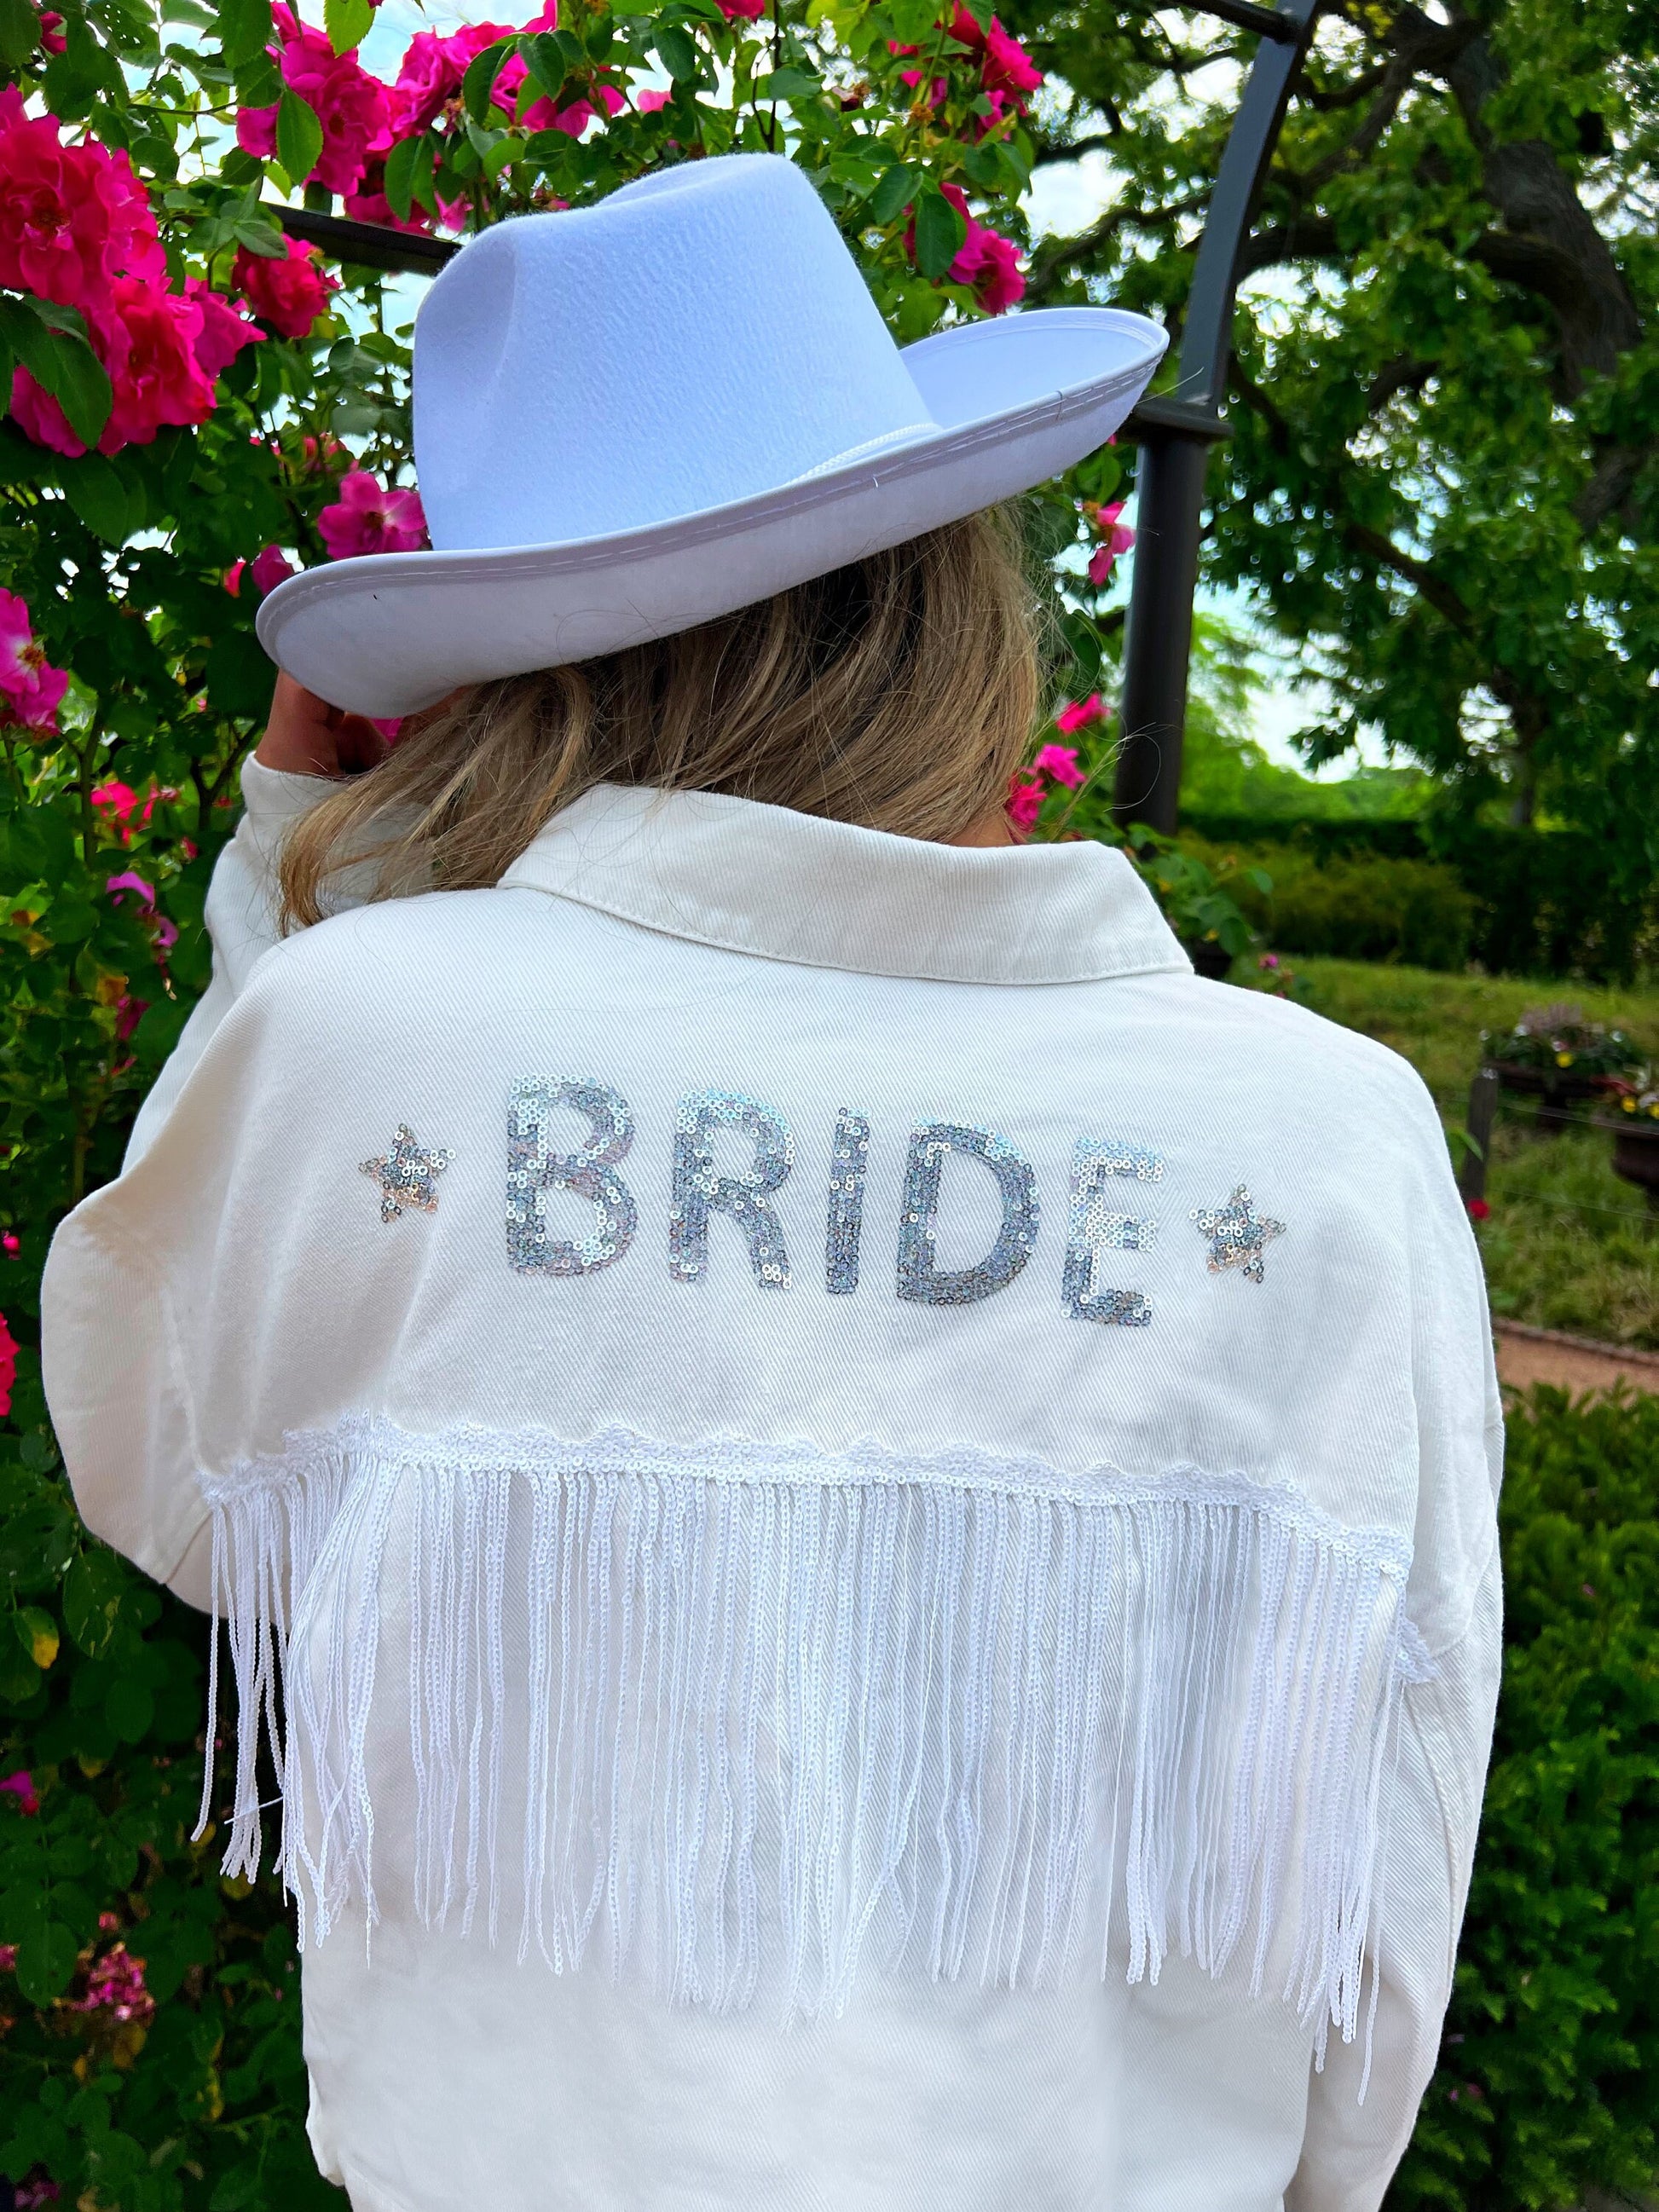 Bride to be jacket | Bride jean jacket bridal denim jacket Nash Bach | Last Rodeo | bridal shower gift Nashville disco cowgirl bachelorette